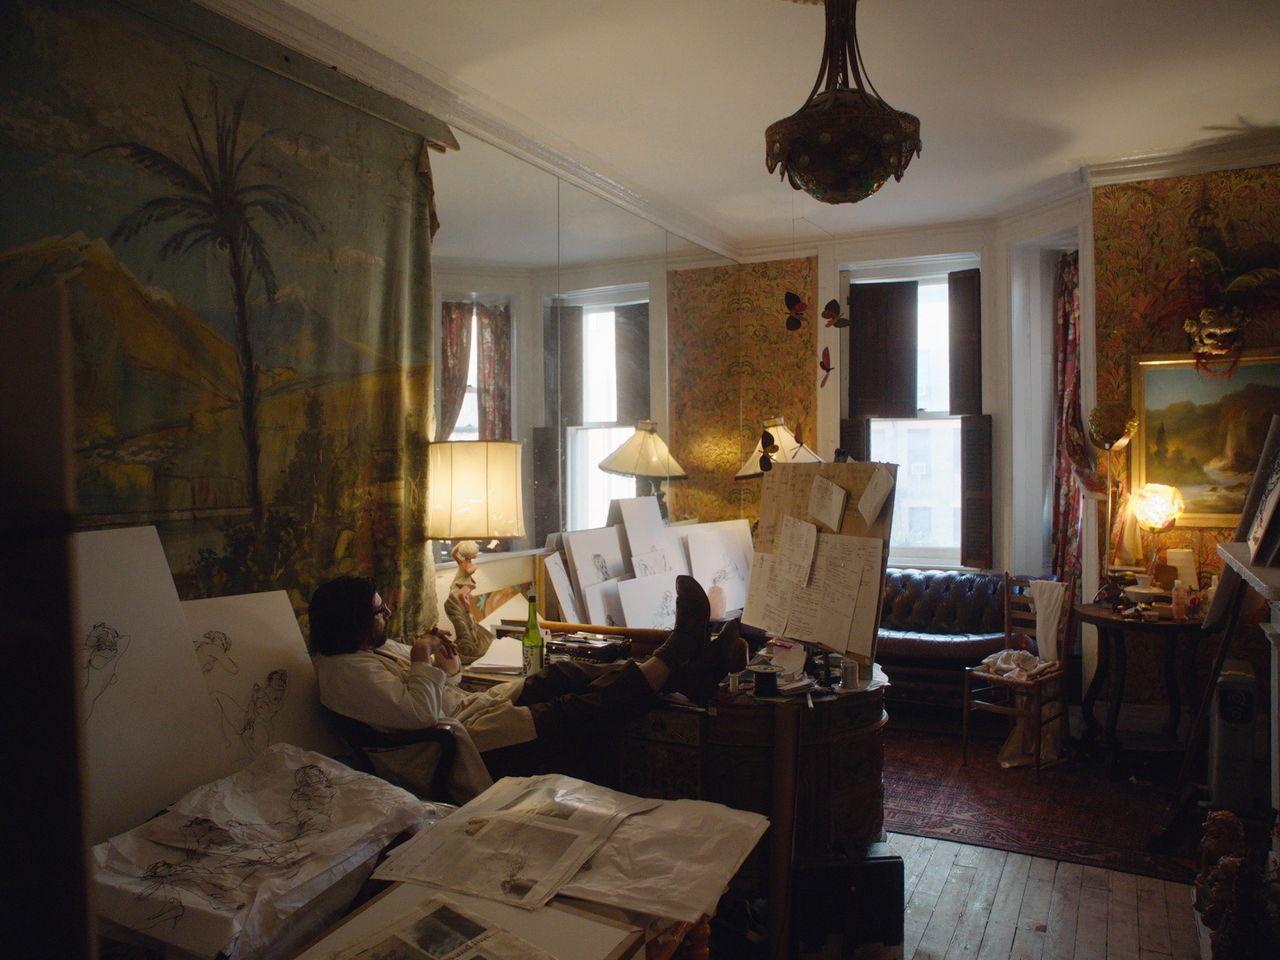 Beeld uit de documentaire ‘Dreaming Walls: Inside the Chelsea Hotel’.